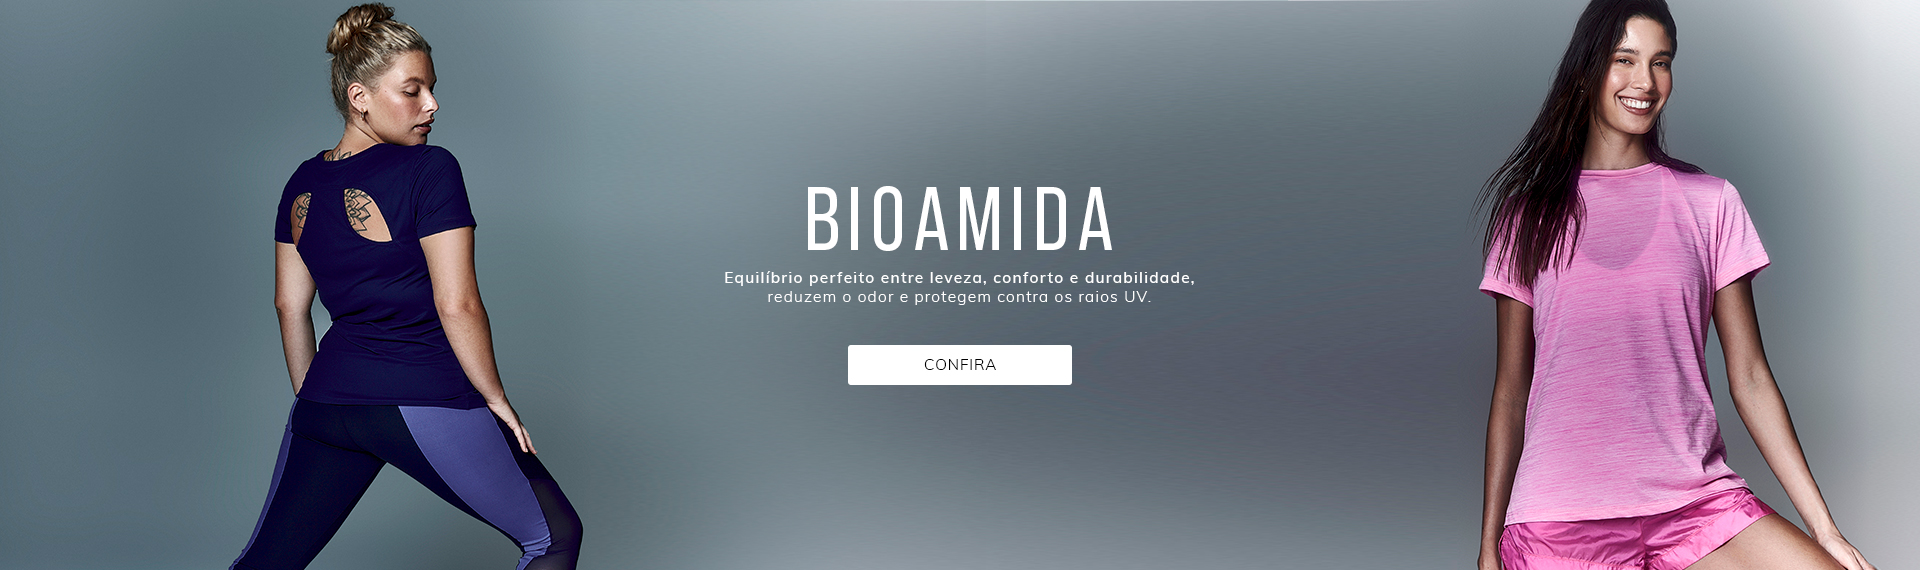 Bioamida